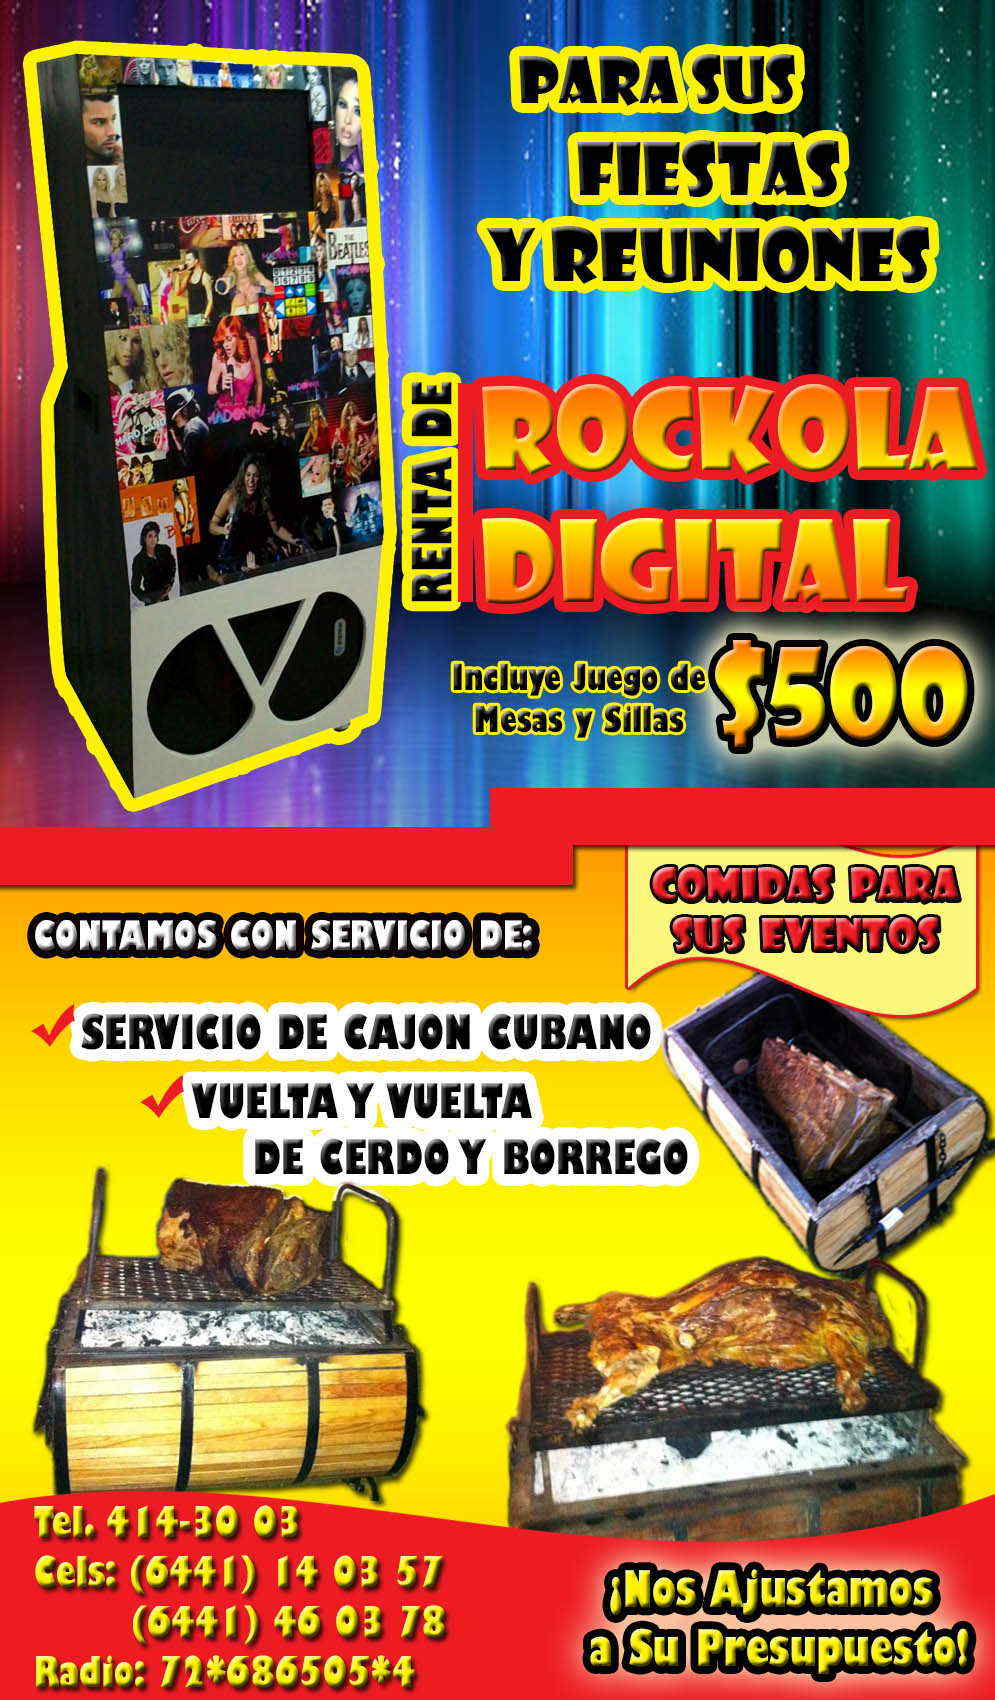 Rockola Digital y Cajón Cubano-Renta de Rockola Digital, Servicio de Cajón Cubano de Cerdo y Borrego. Comidas para eventos.     